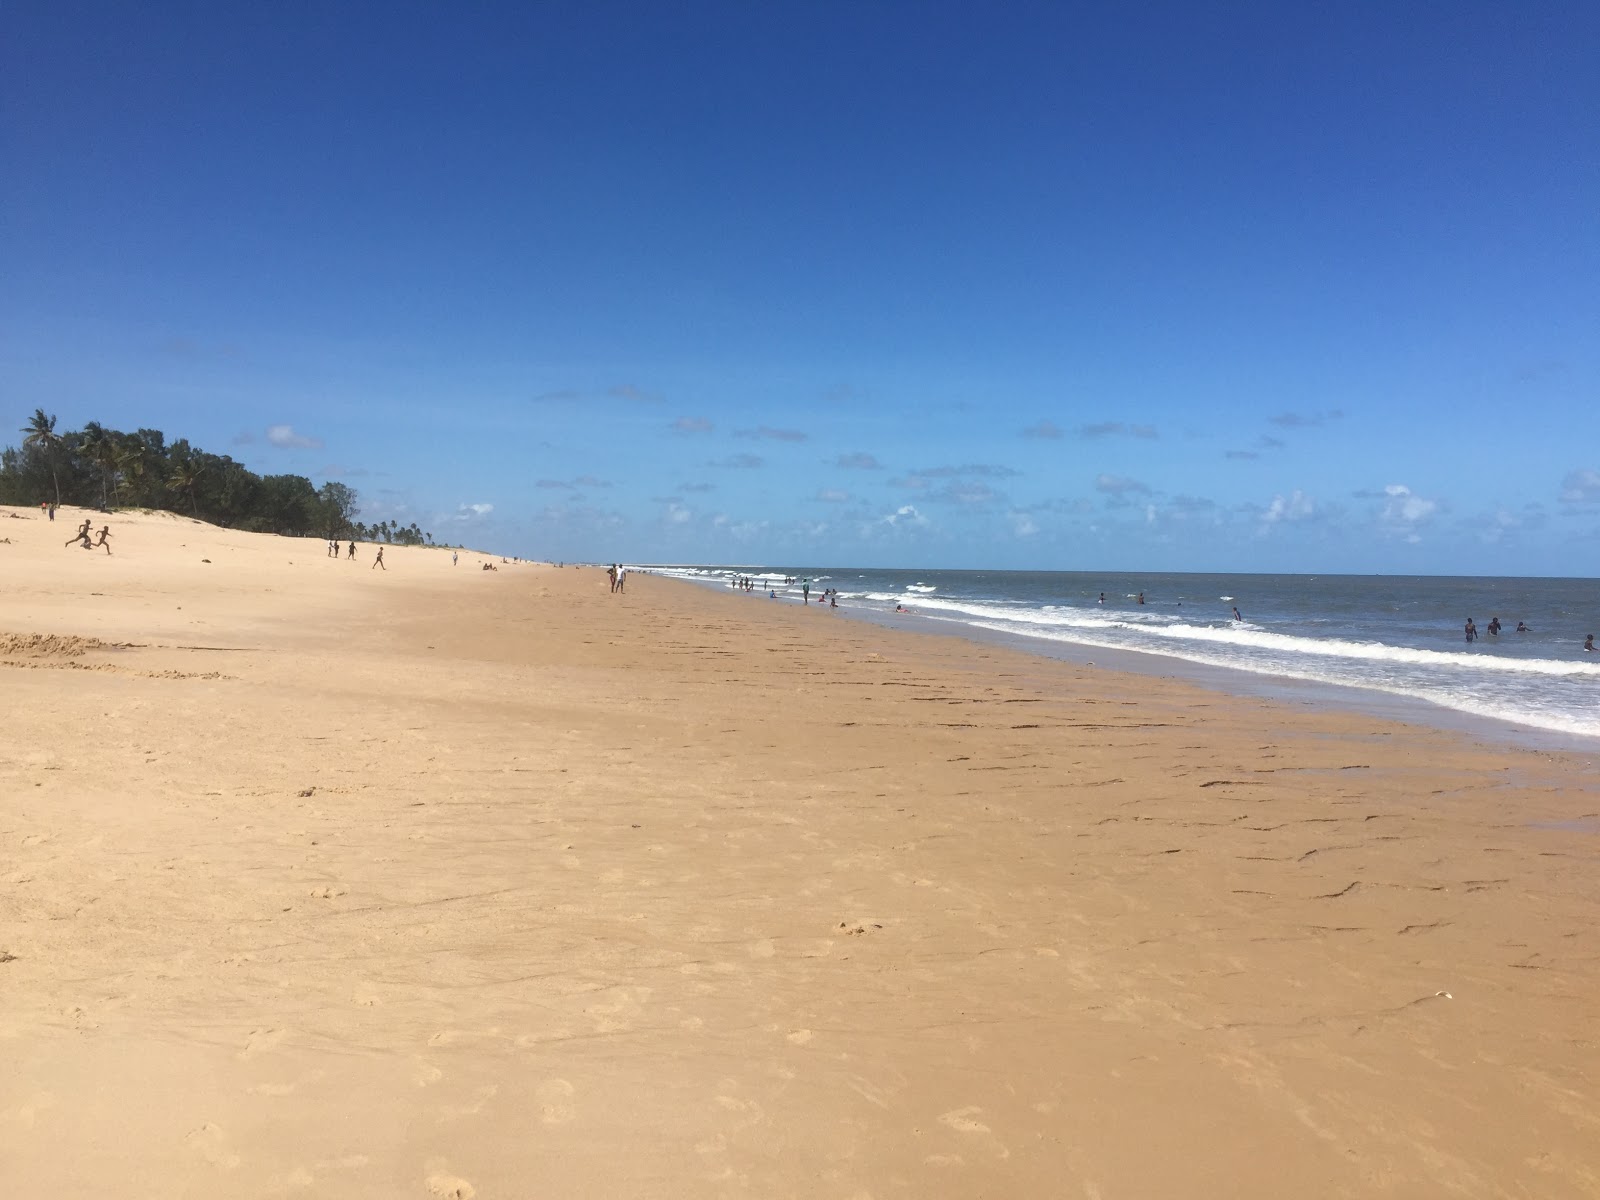 Beira Beach'in fotoğrafı parlak kum yüzey ile